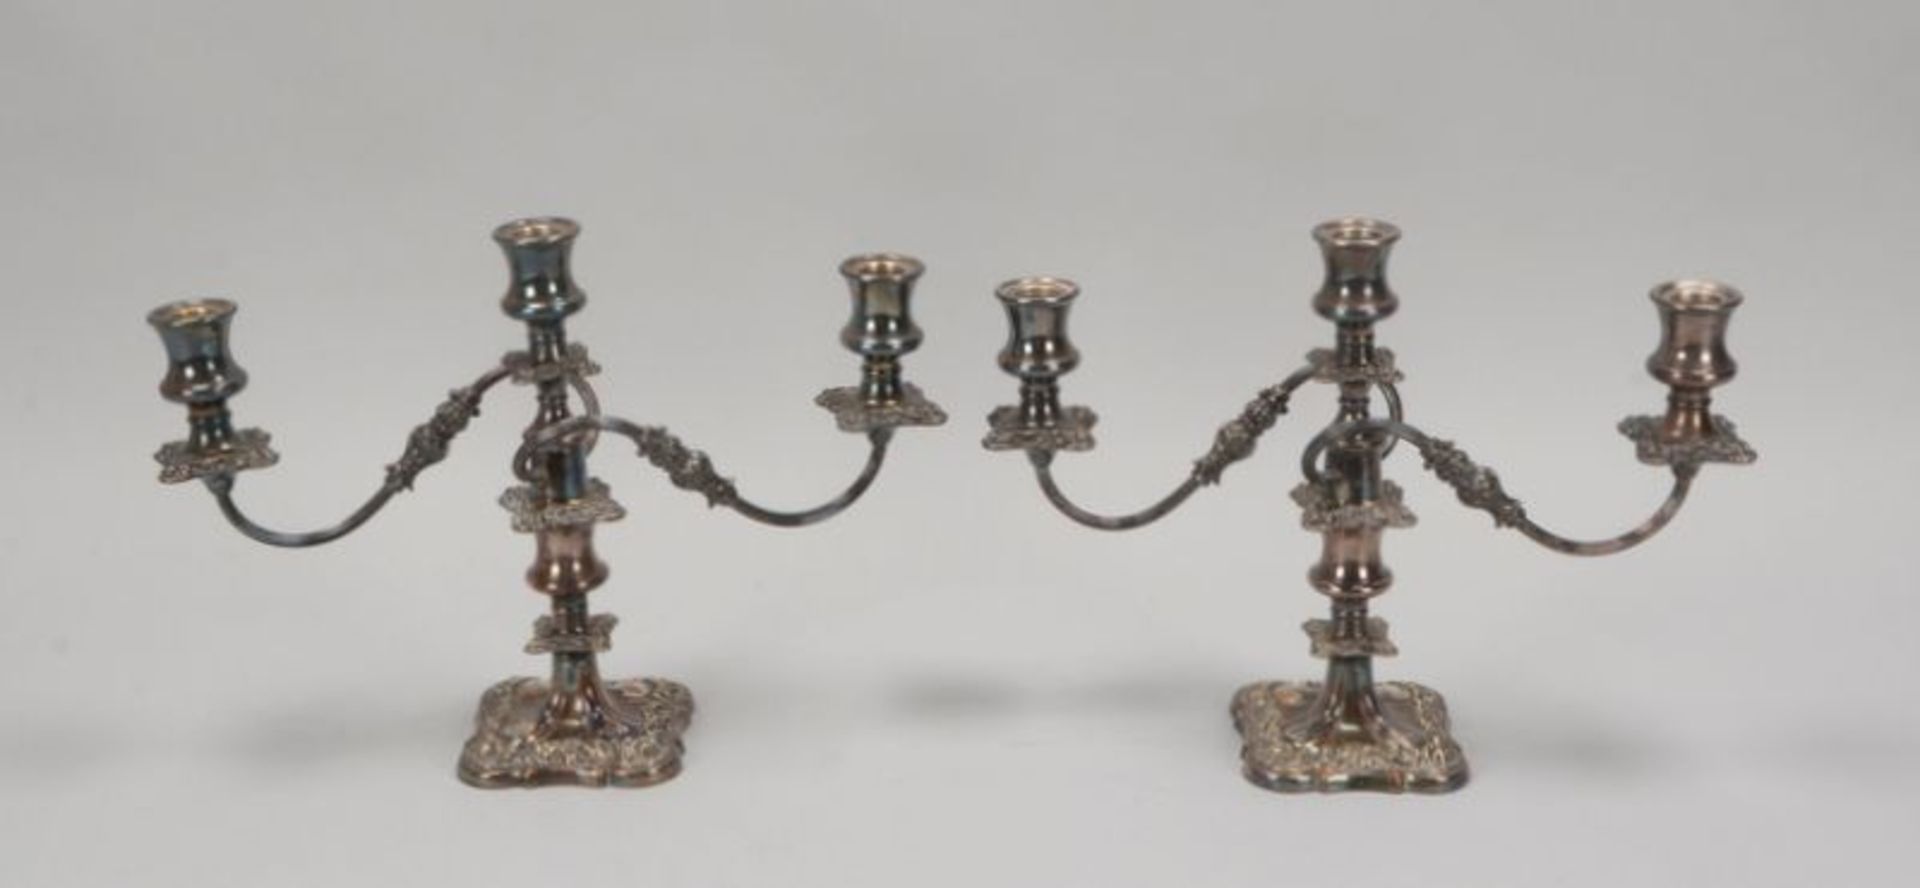 Paar Tischkerzenleuchter (England), 3-flammig, versilbert, 2-teilig, mit reichem floralem Reliefdeko - Bild 2 aus 2